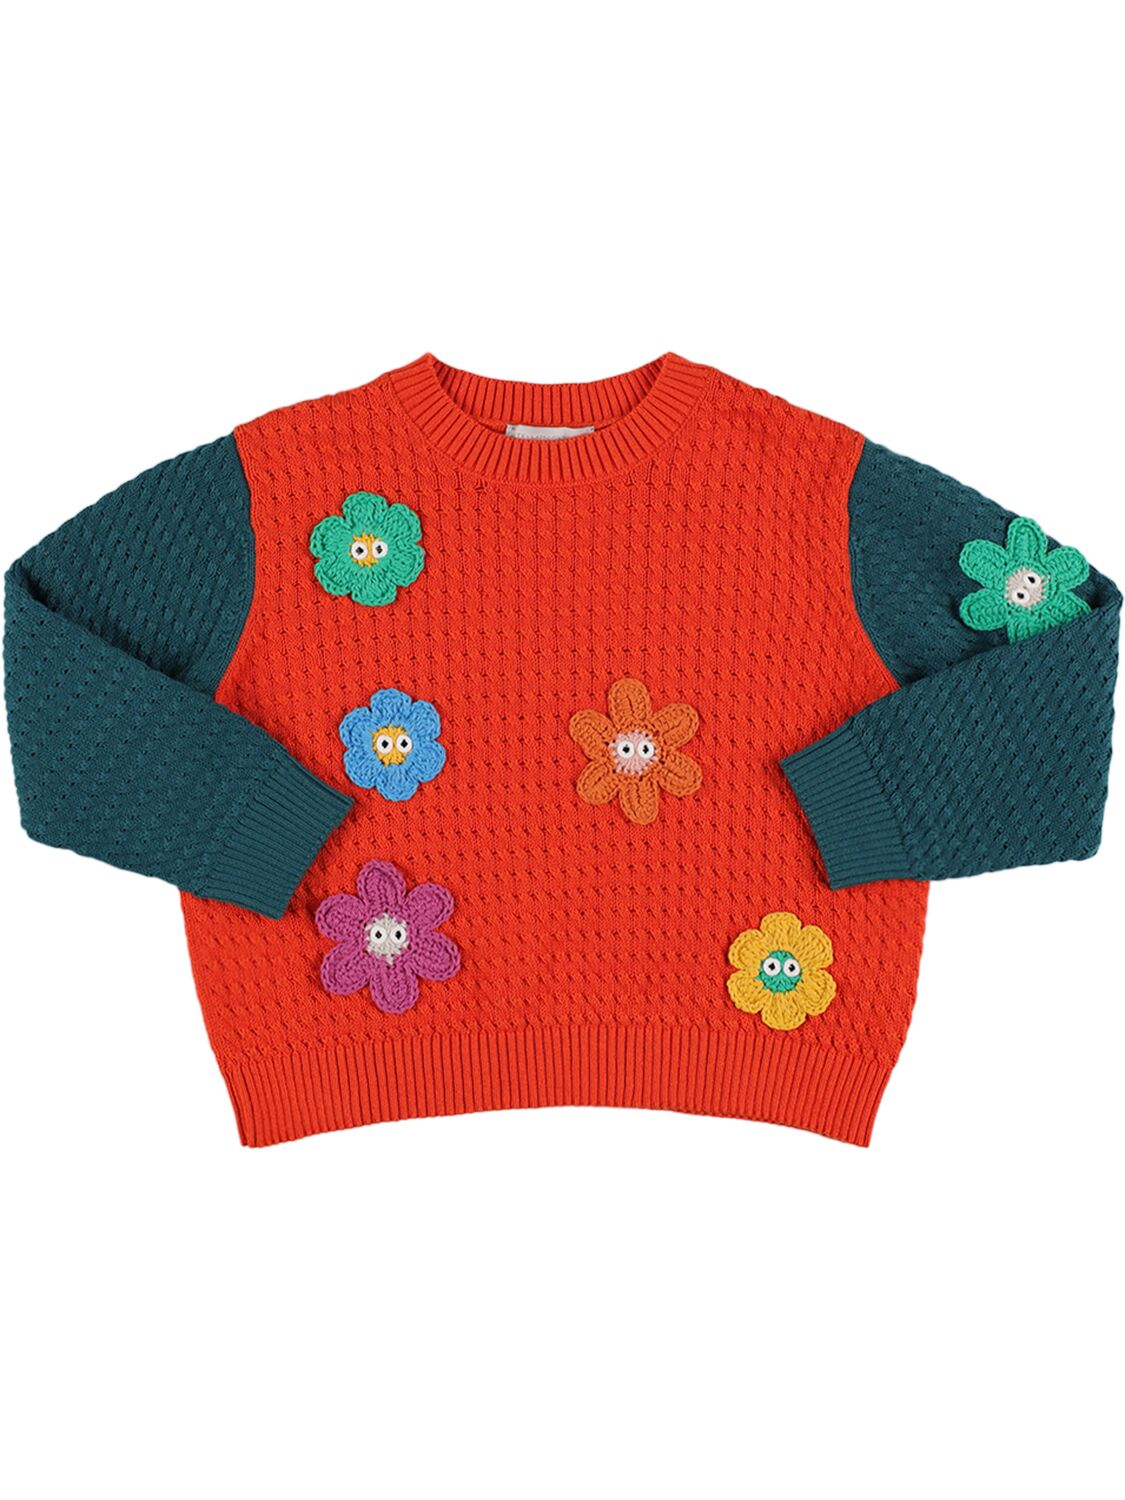 Image of Organic Cotton & Wool Knit Sweater